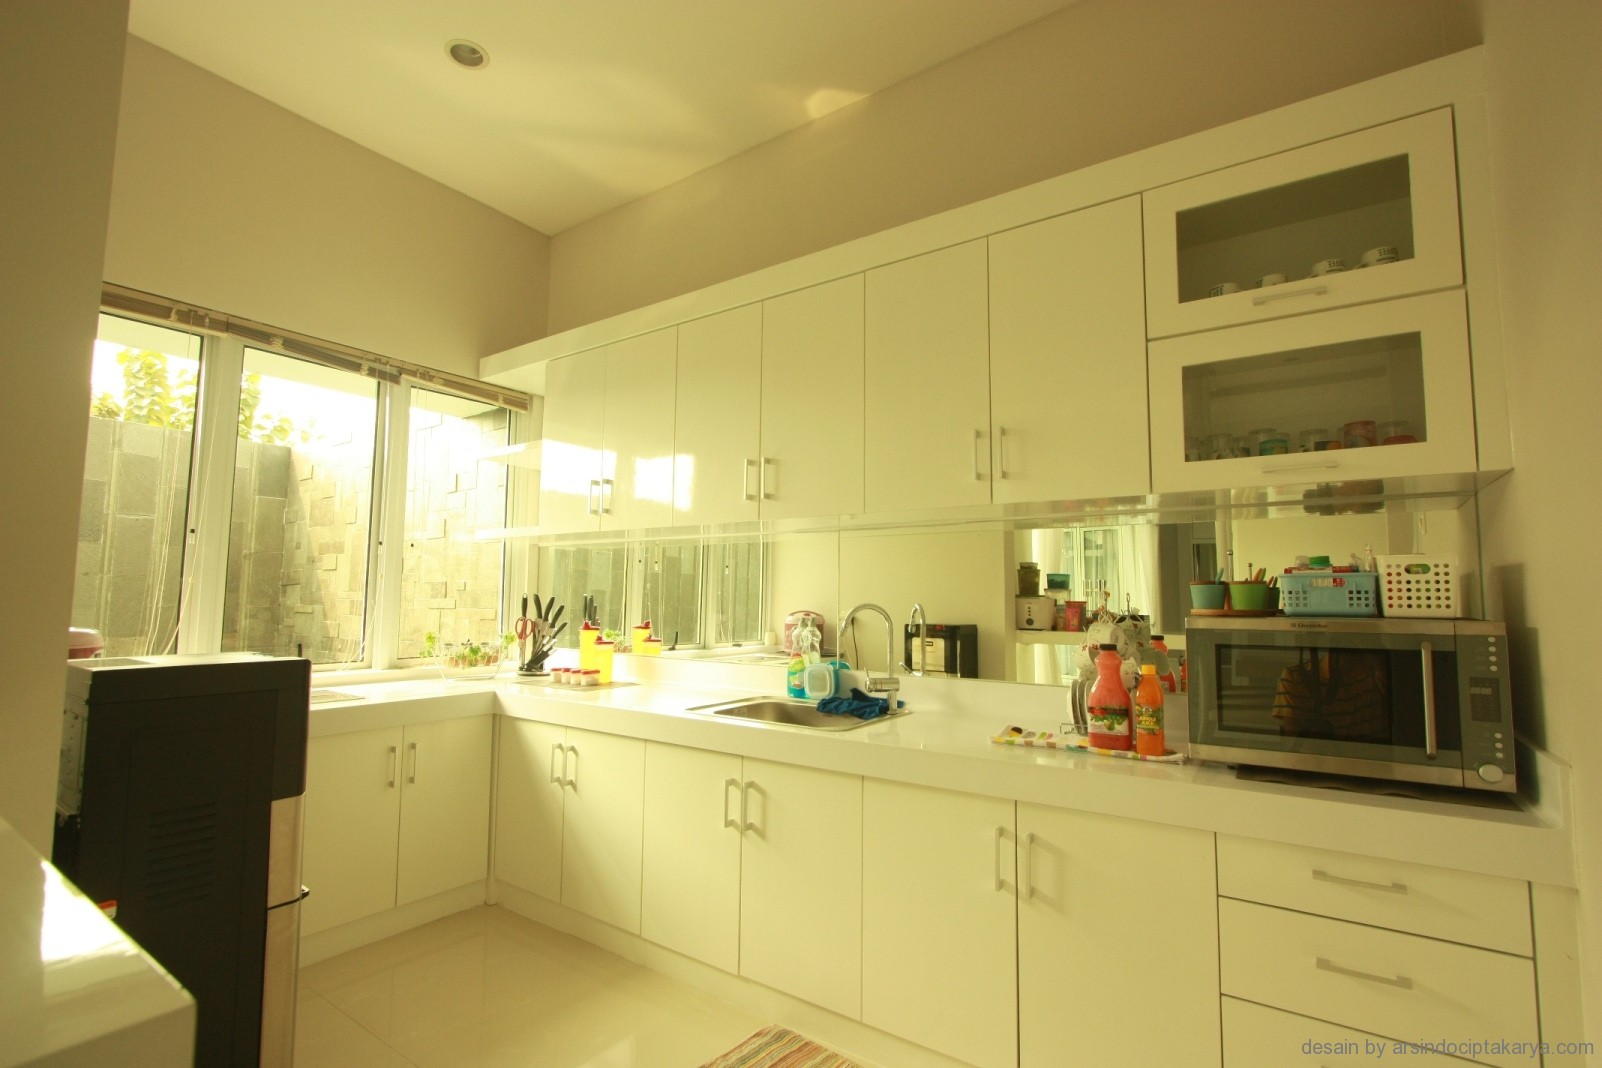  Desain  Pantry  Dapur Untuk Konsep Interior Rumah Atau 